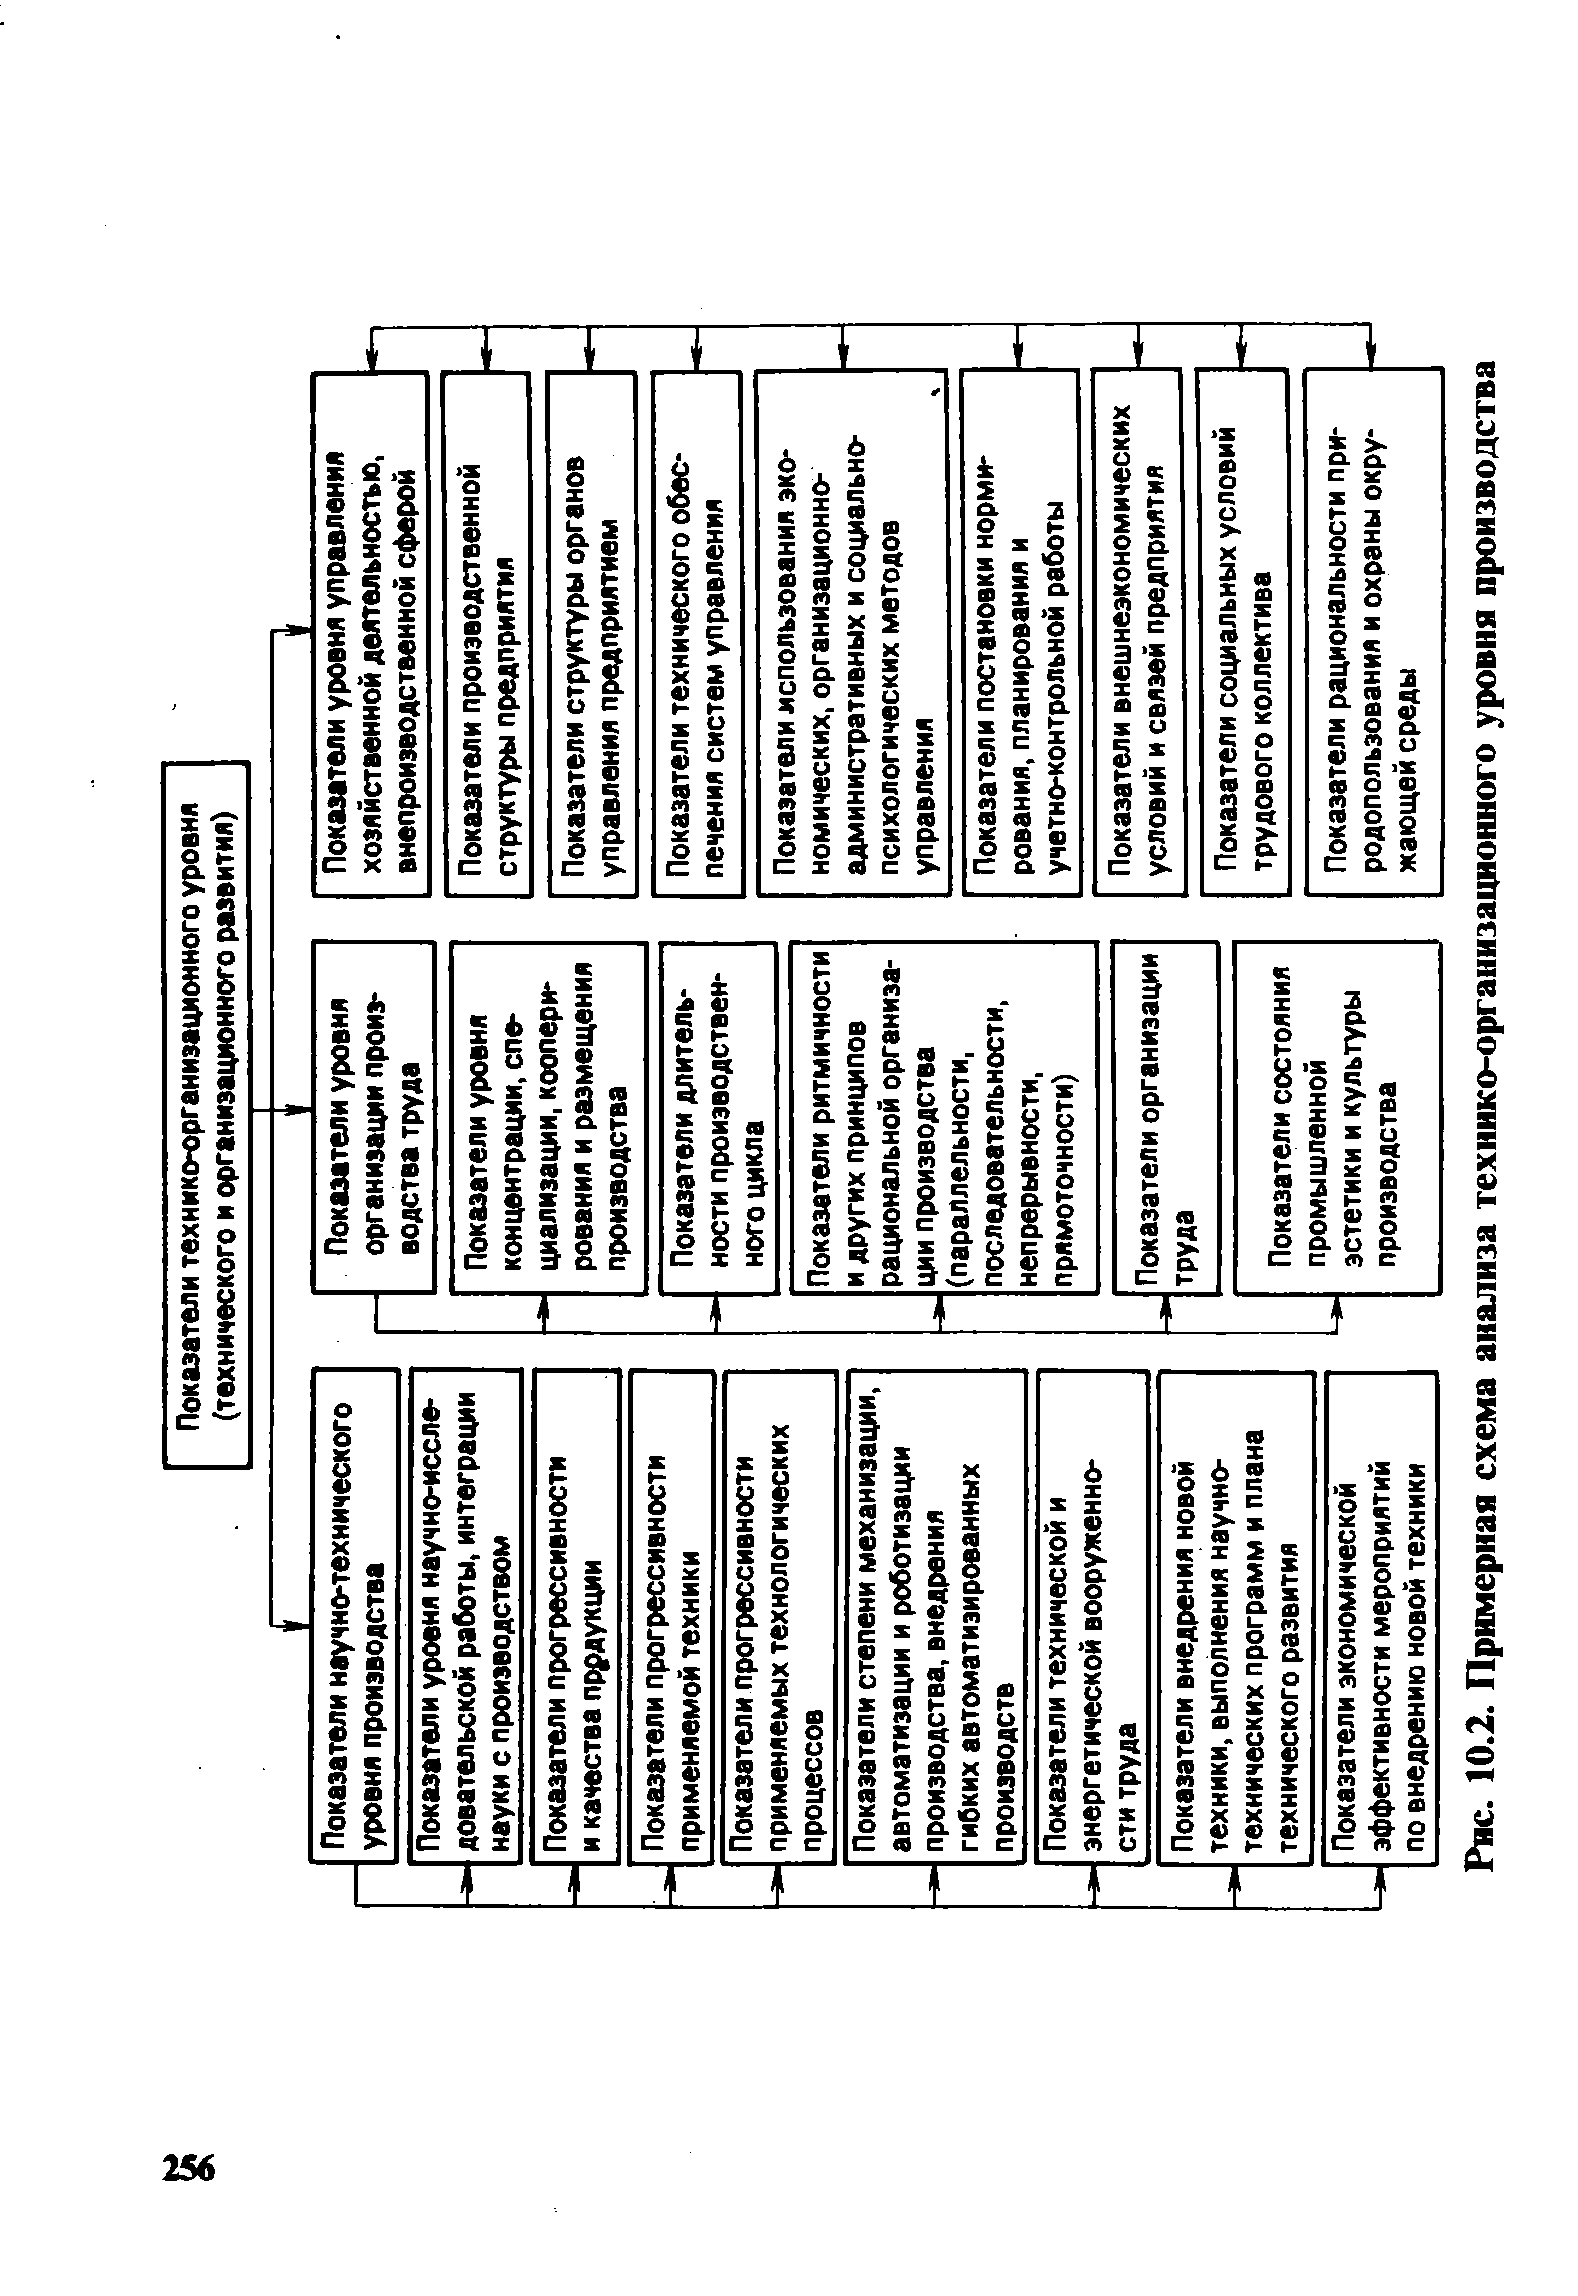 Рис. 10.2. Примерная схема анализа технико-организационного уровня производства
